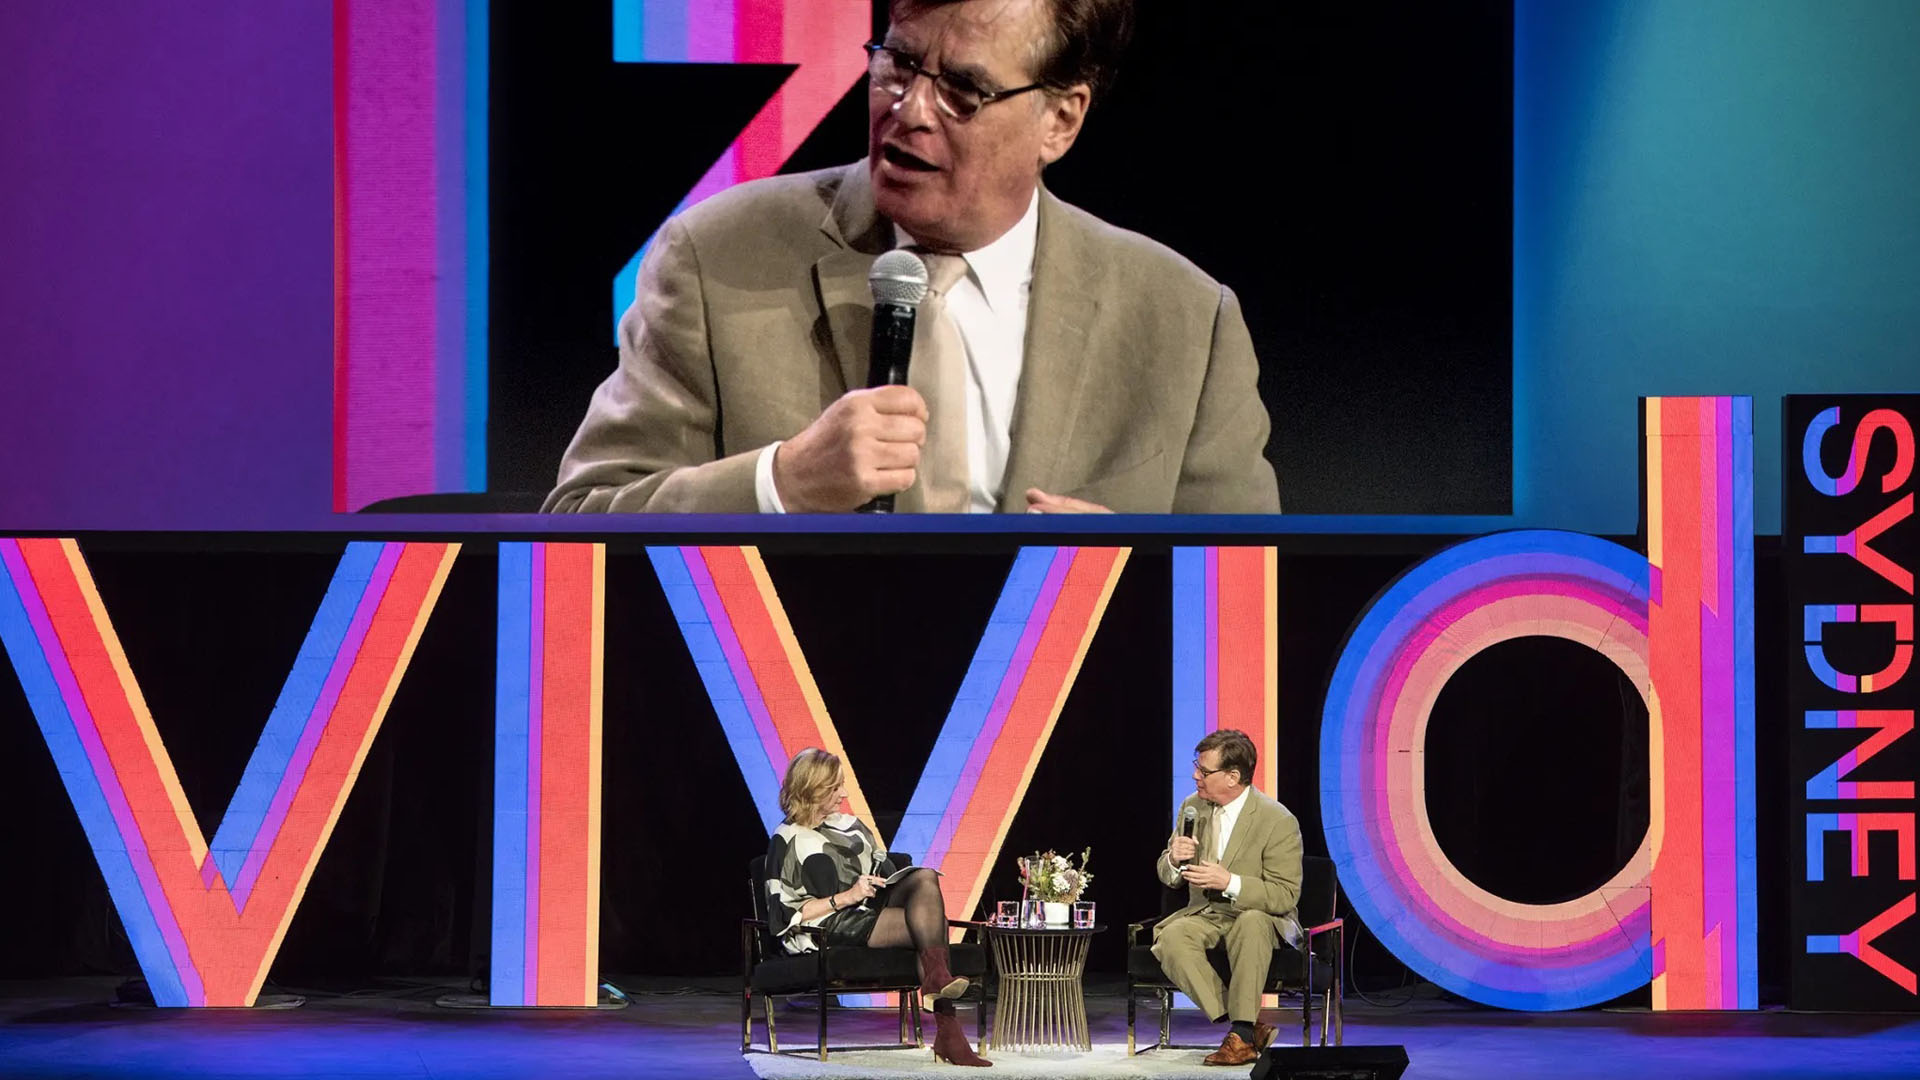 Aaron Sorkin on stage in the Vivid Ideas talk